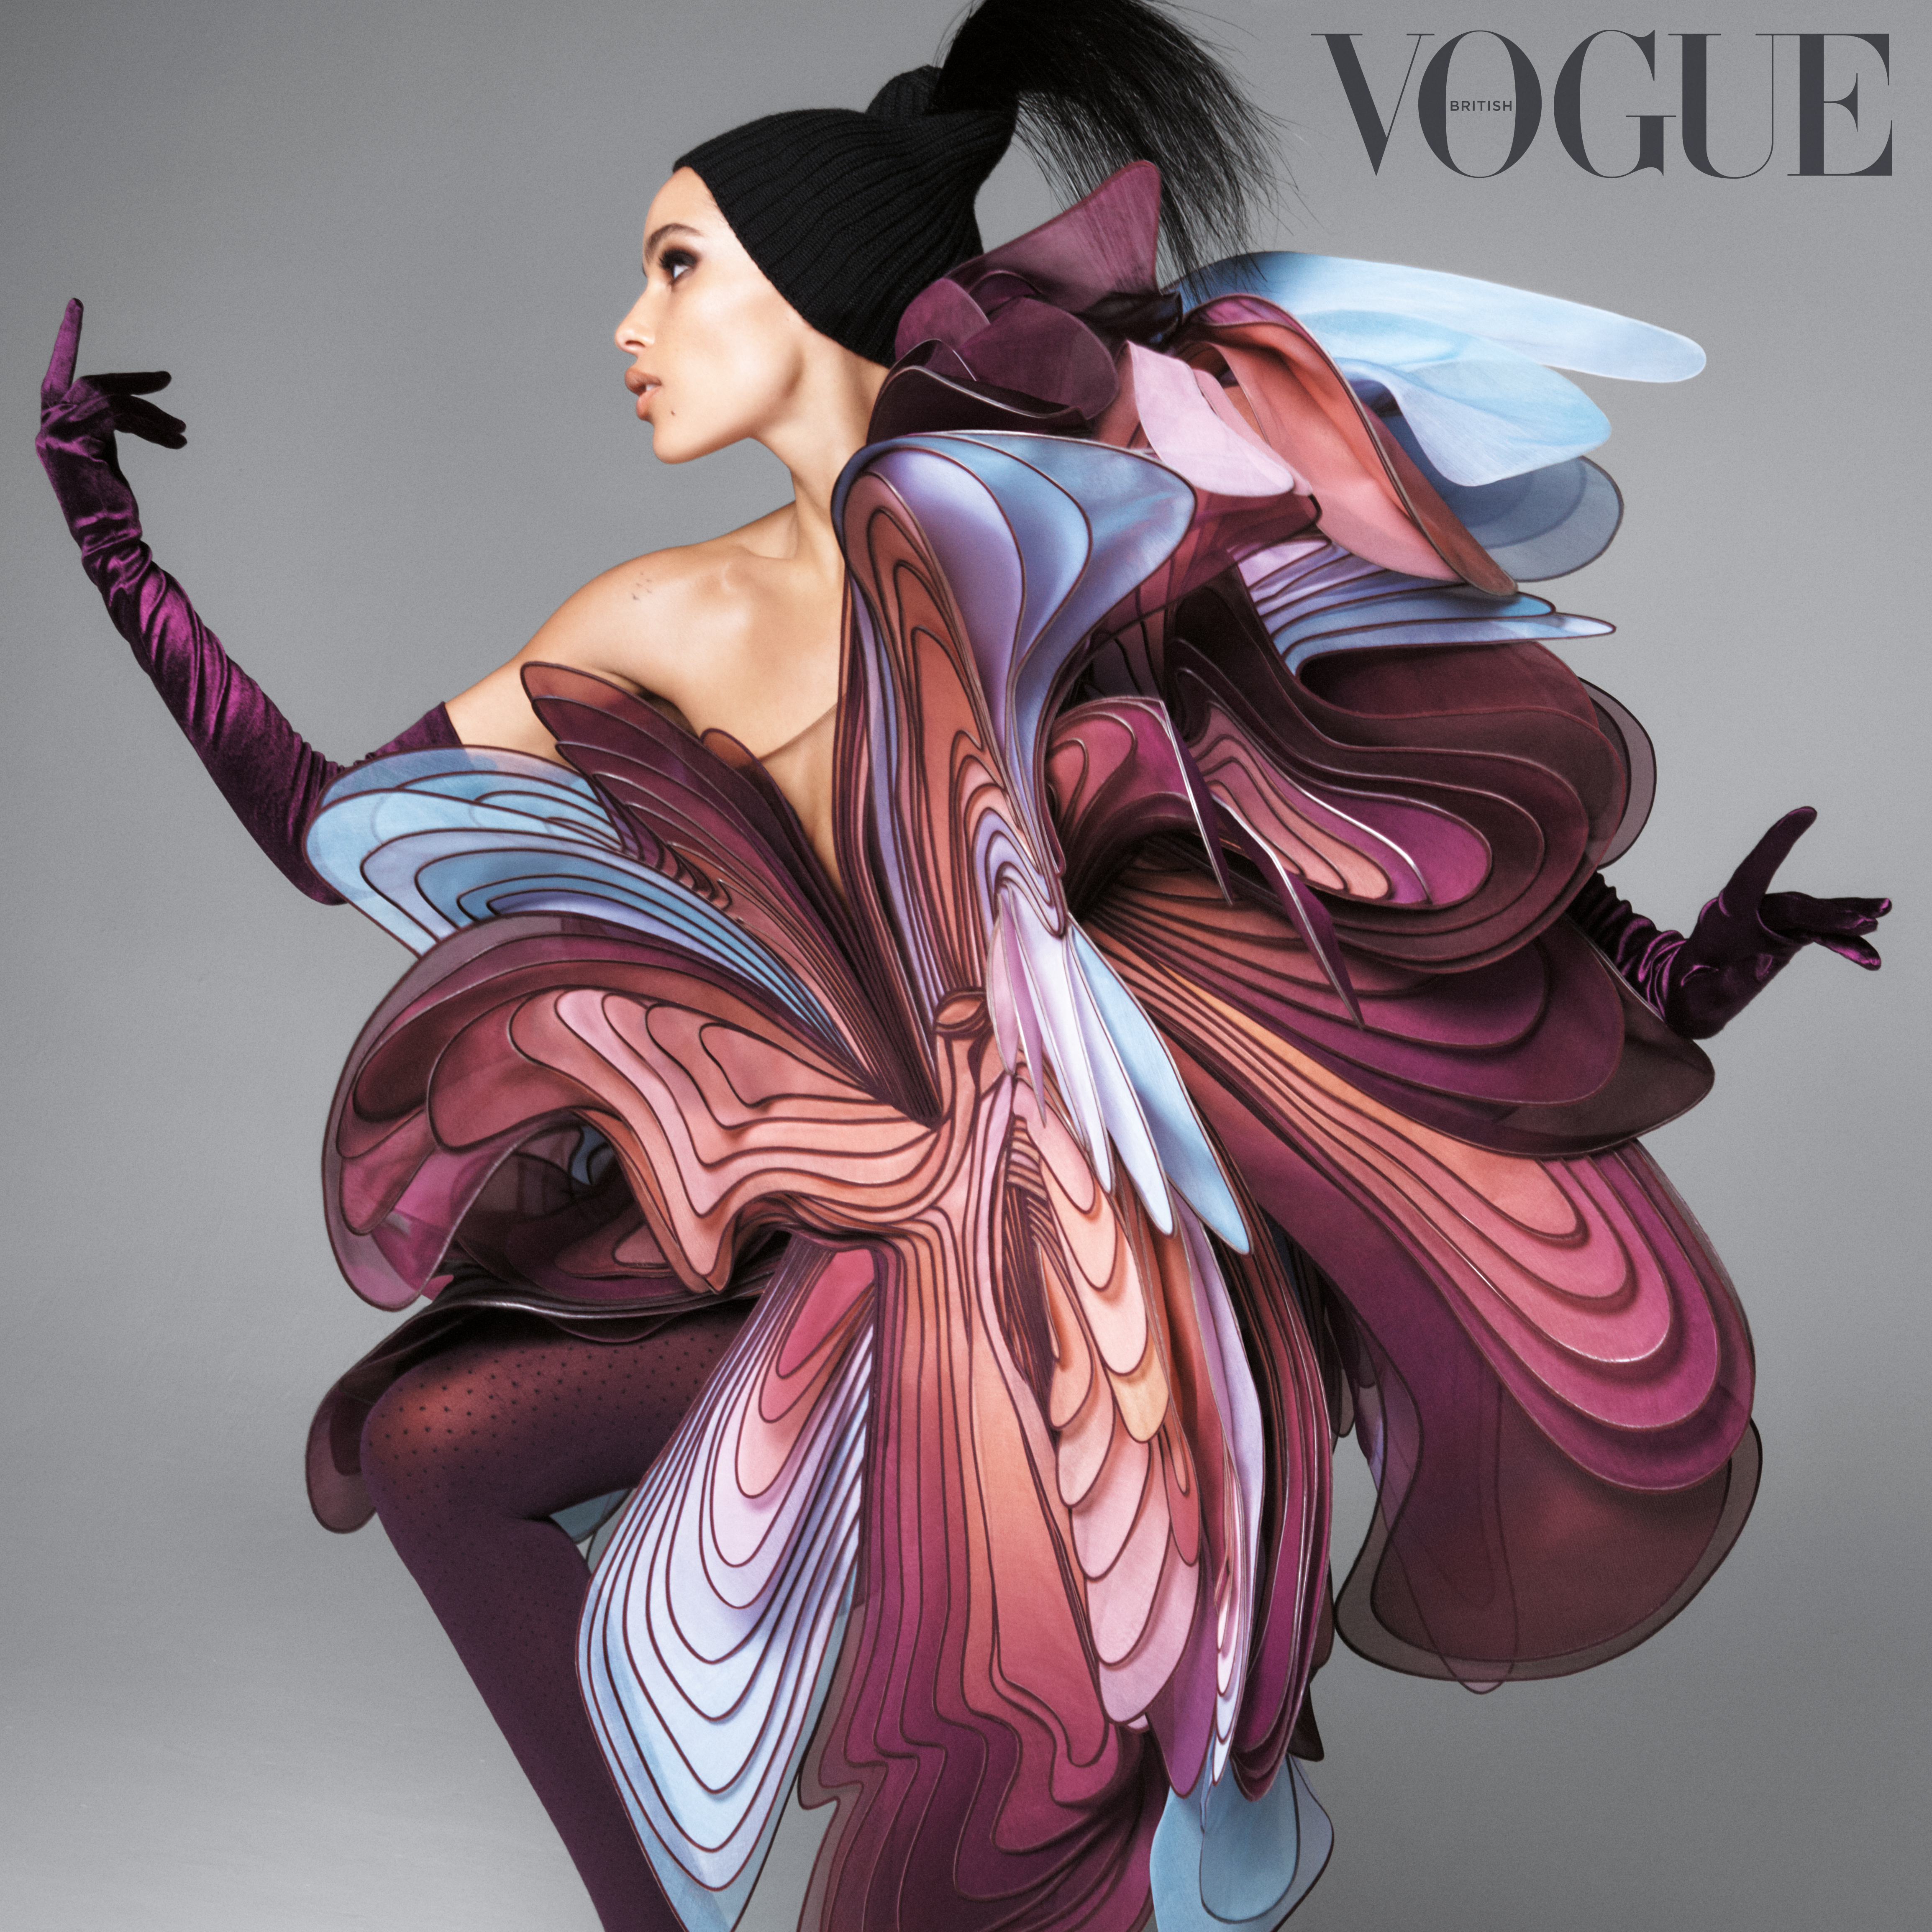 Zoe Kravitz in the July issue of British Vogue